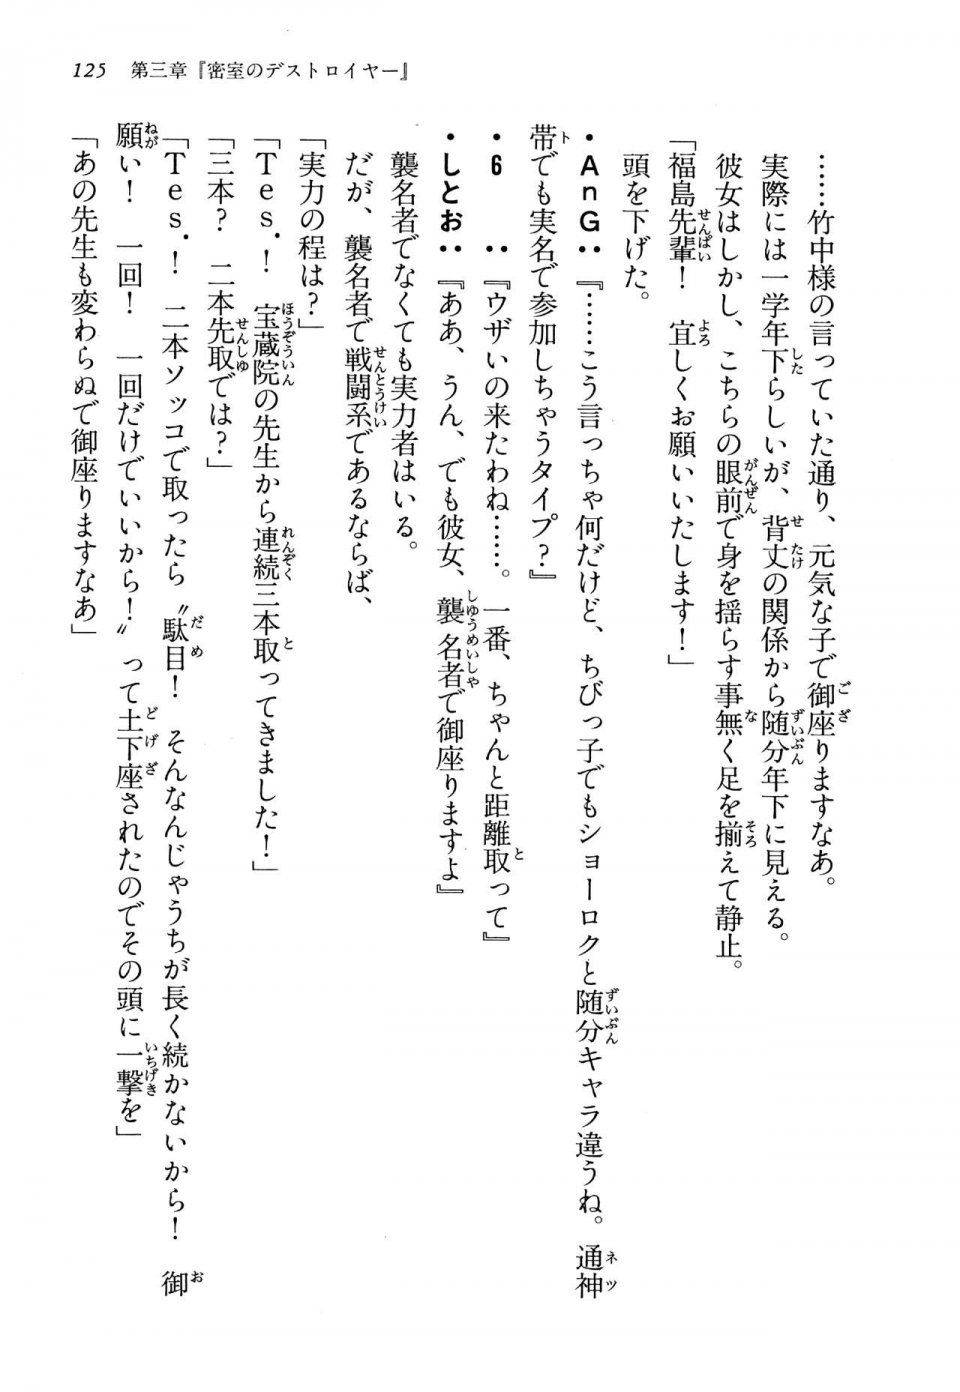 Kyoukai Senjou no Horizon LN Vol 13(6A) - Photo #125